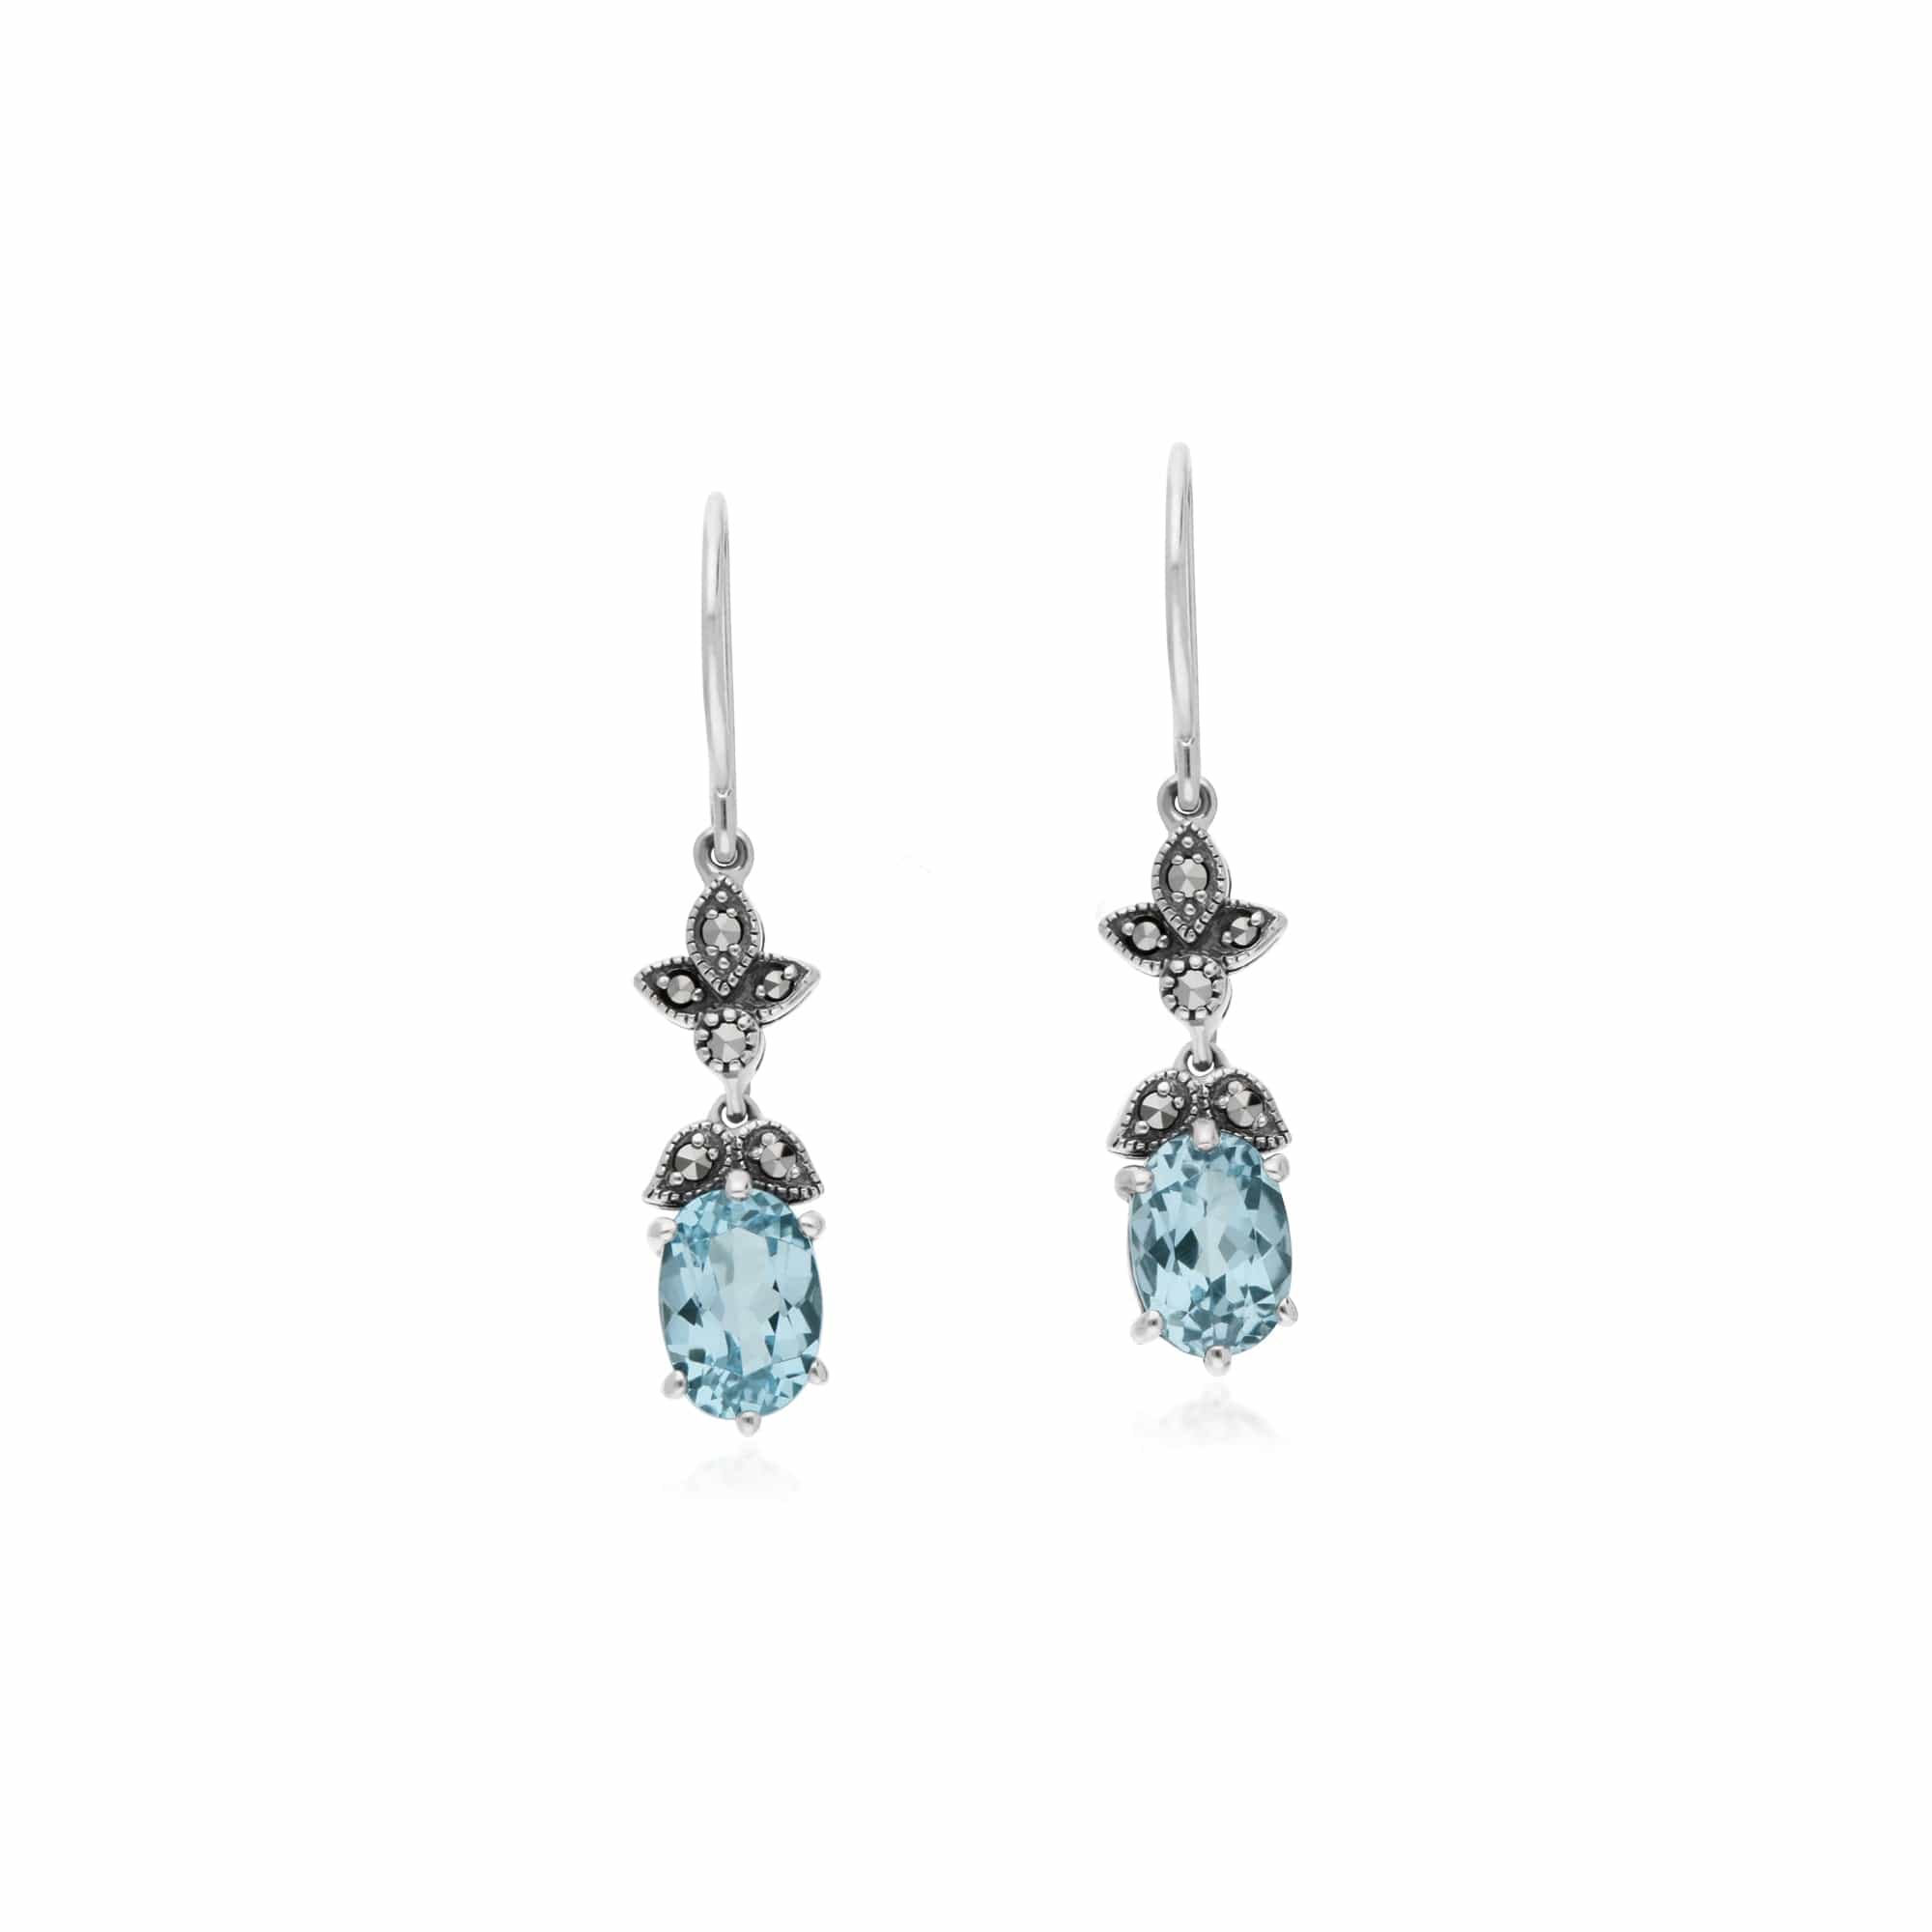 214E861103925 Art Nouveau Style Oval Blue Topaz & Marcasite Drop Earrings in 925 Sterling Silver 1